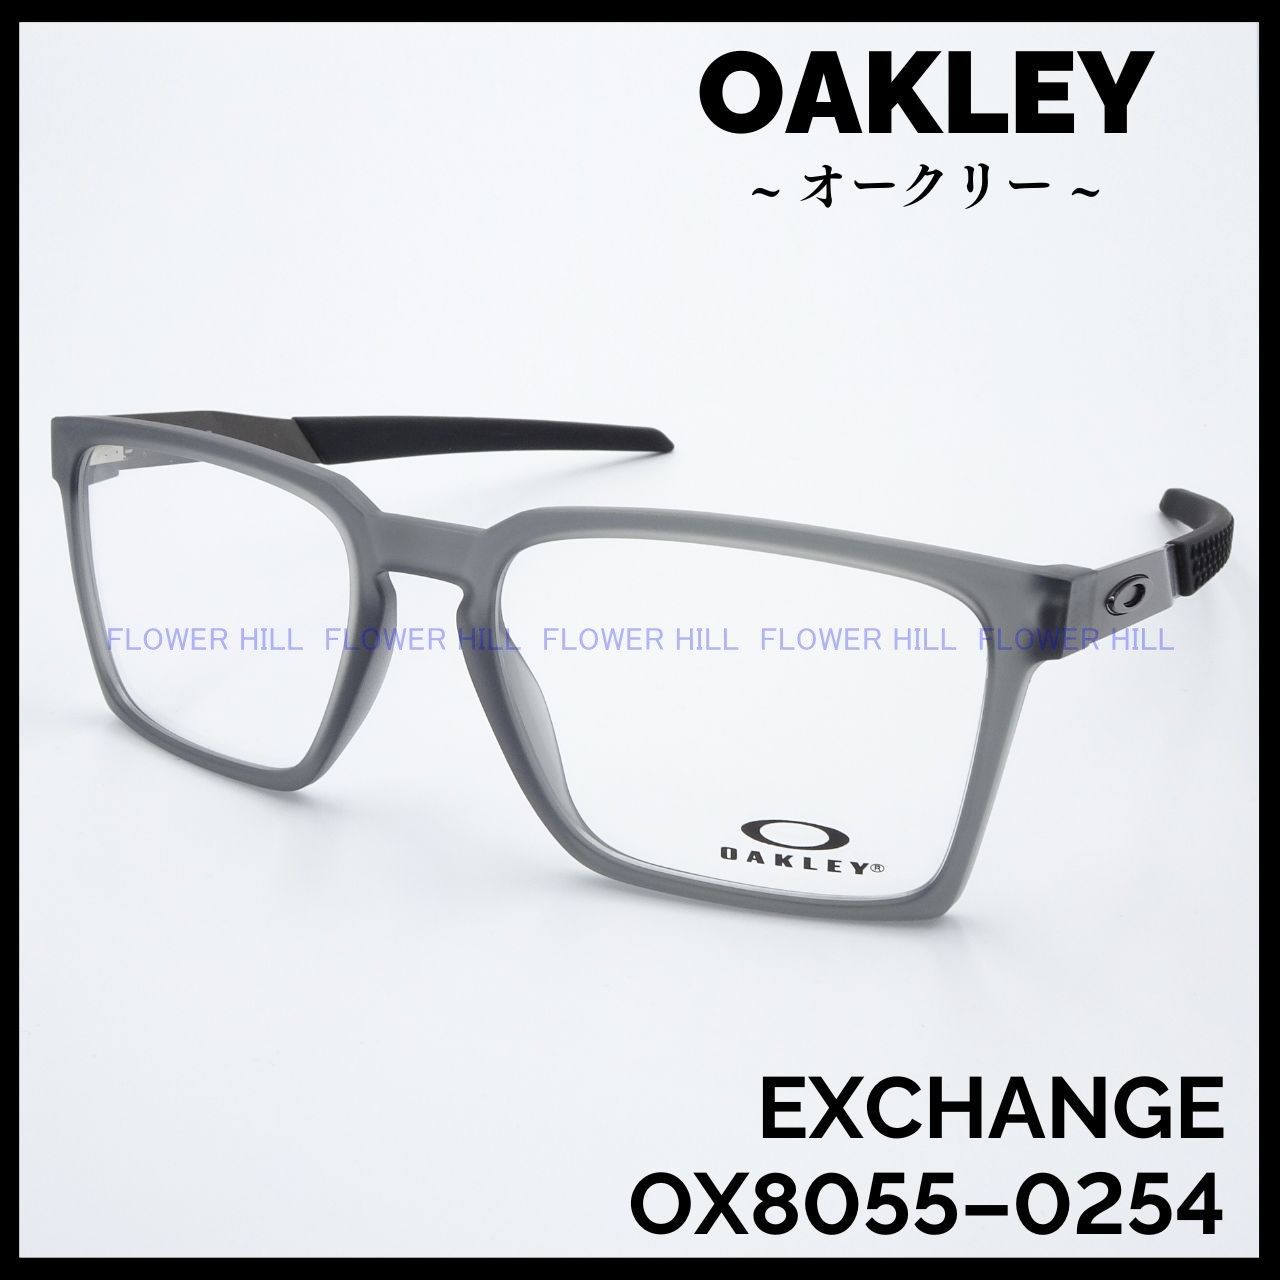 OAKLEY オークリー メガネ フレーム EXCHANGE OX8055-0254 サテン 